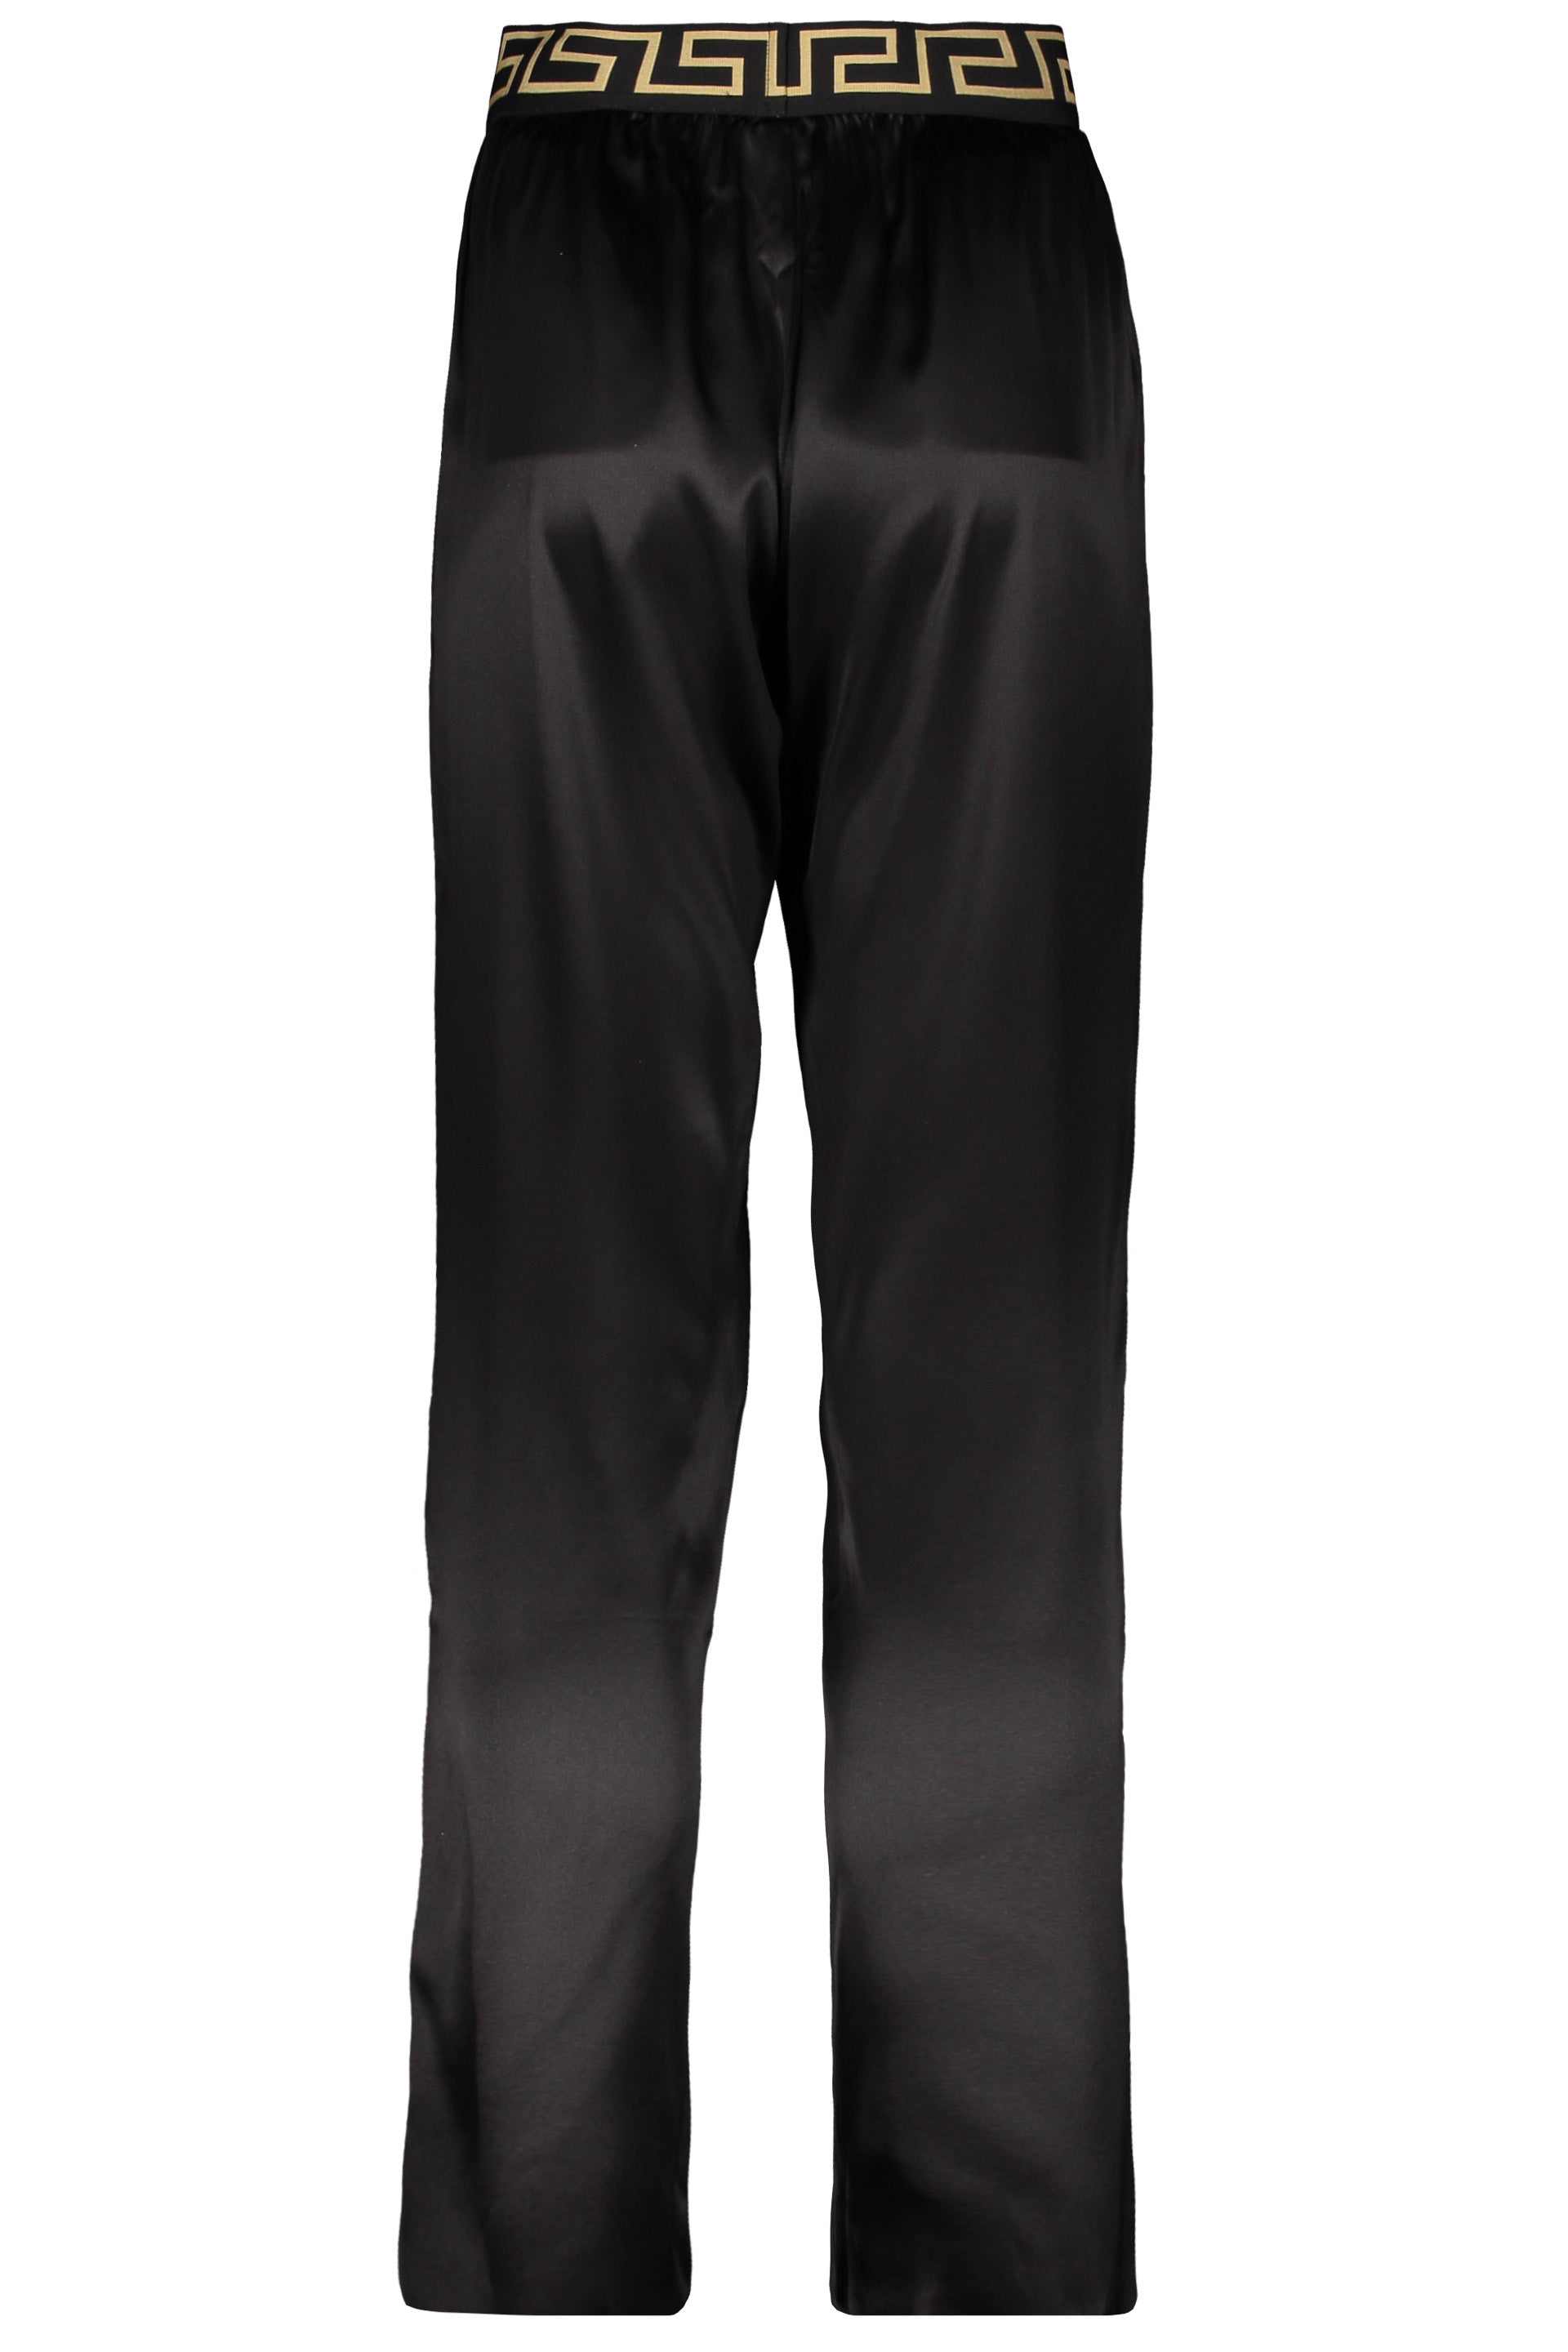 Silk pajama pants-Versace-OUTLET-SALE-ARCHIVIST